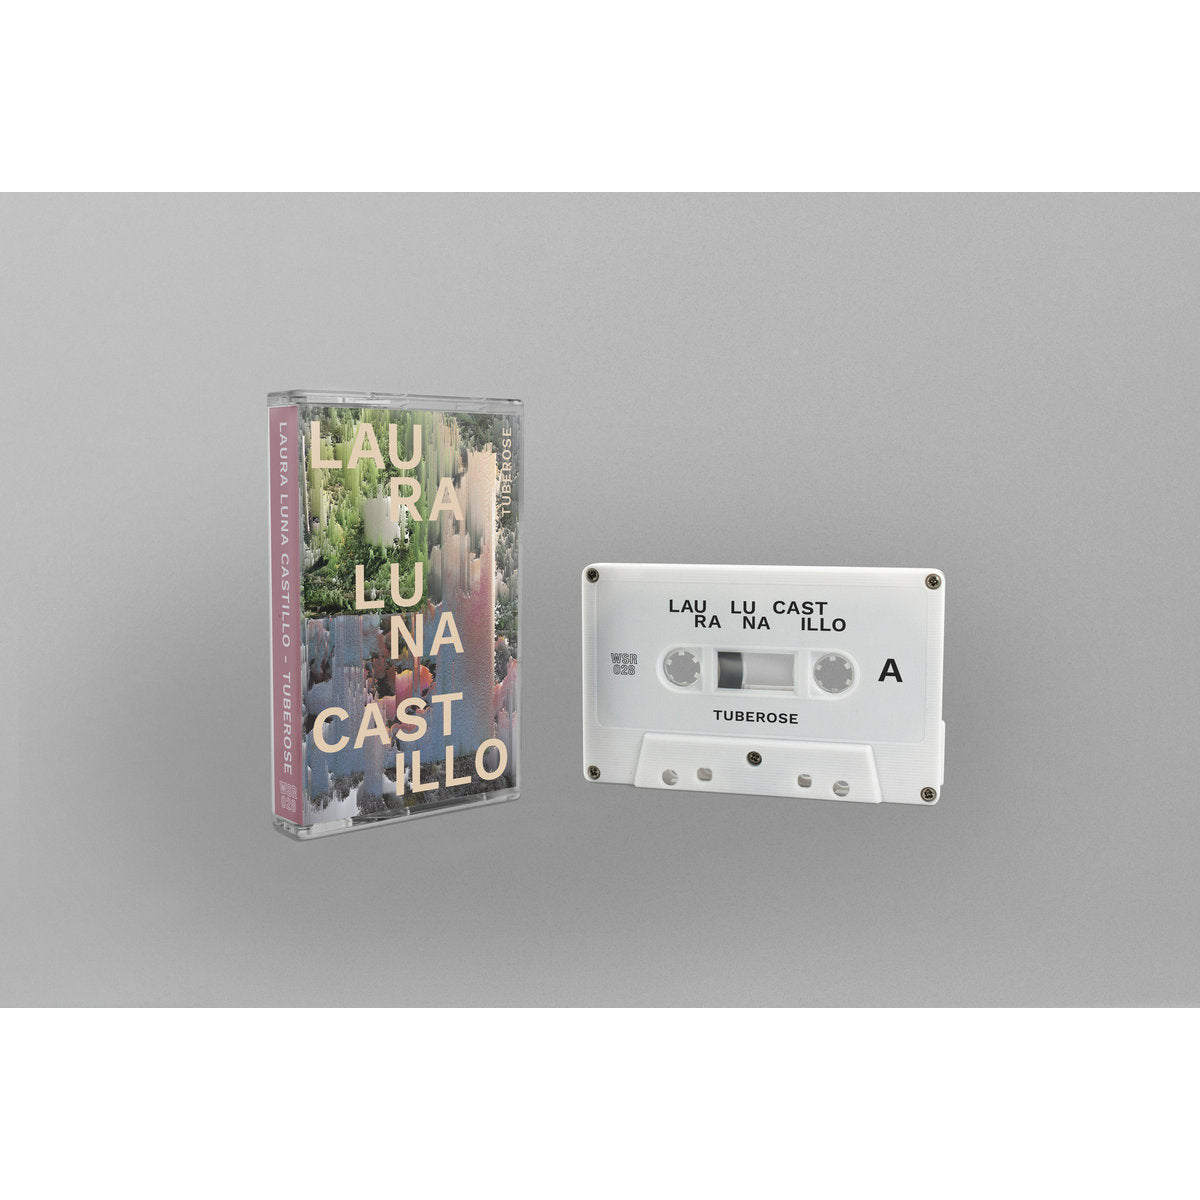 Laura Luna Castillo - Tuberose cassette